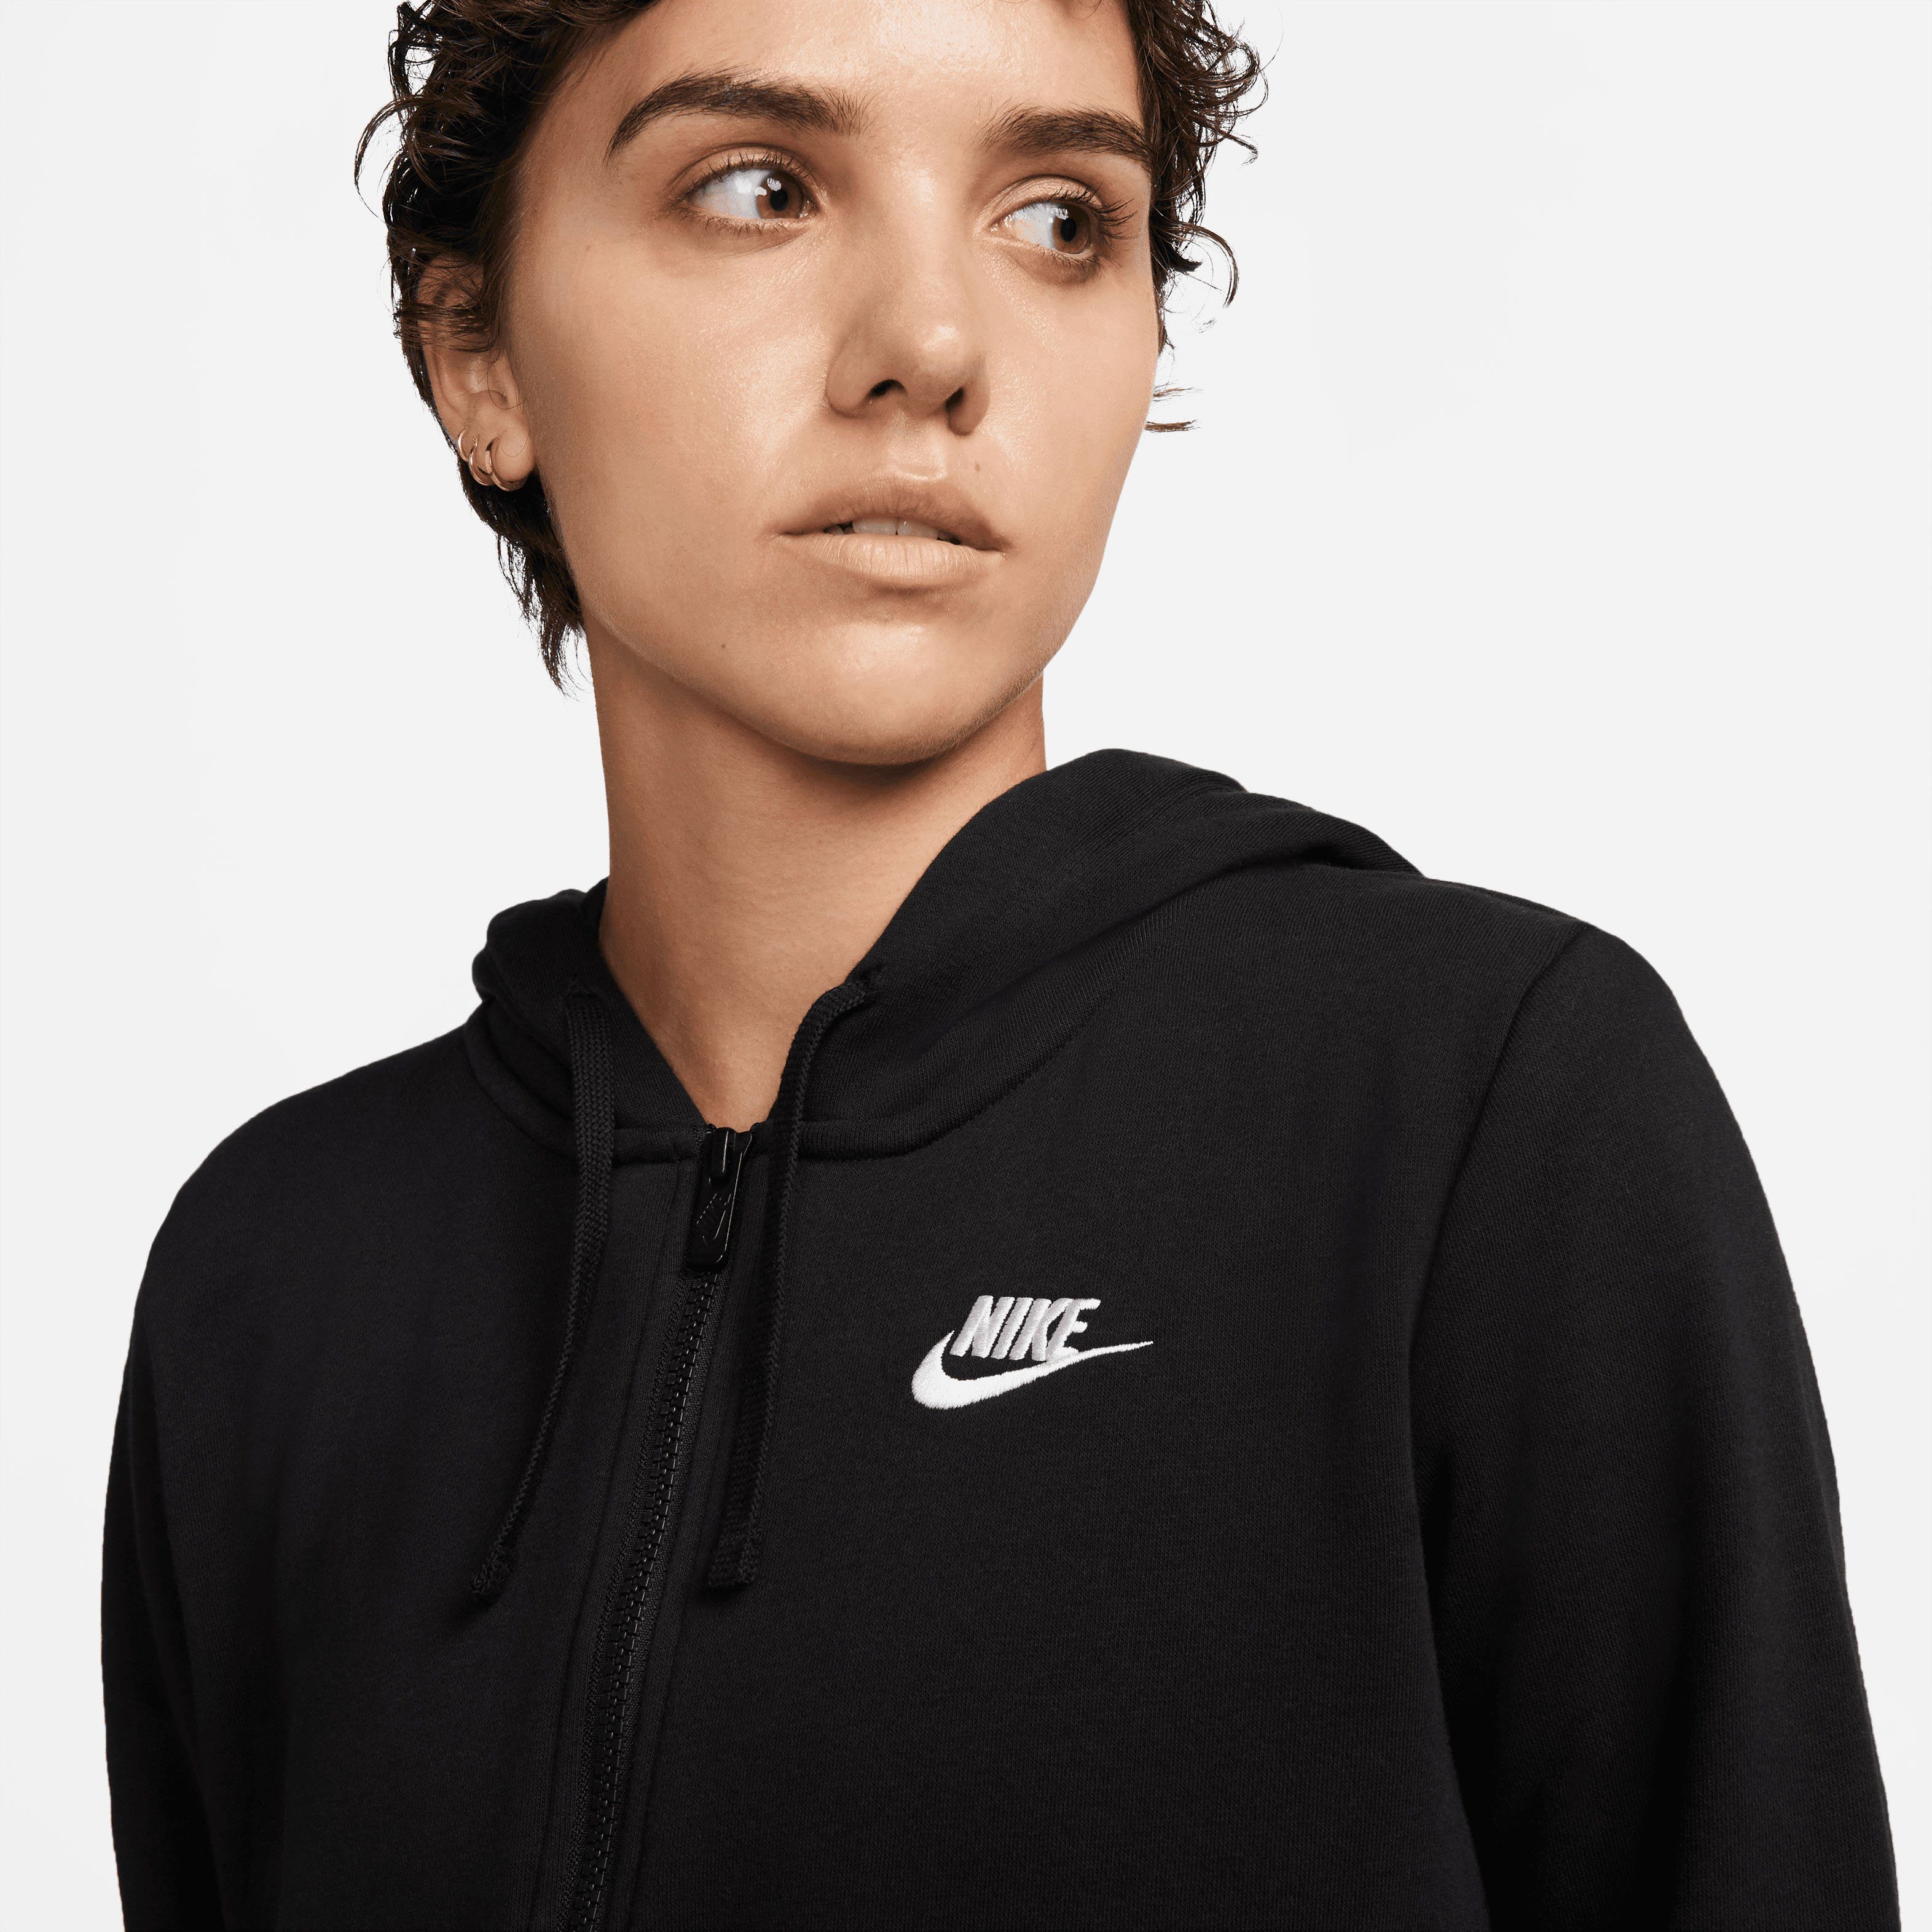 Women's BLACK/WHITE Nike Dress Sweatkleid Club Fleece Sportswear